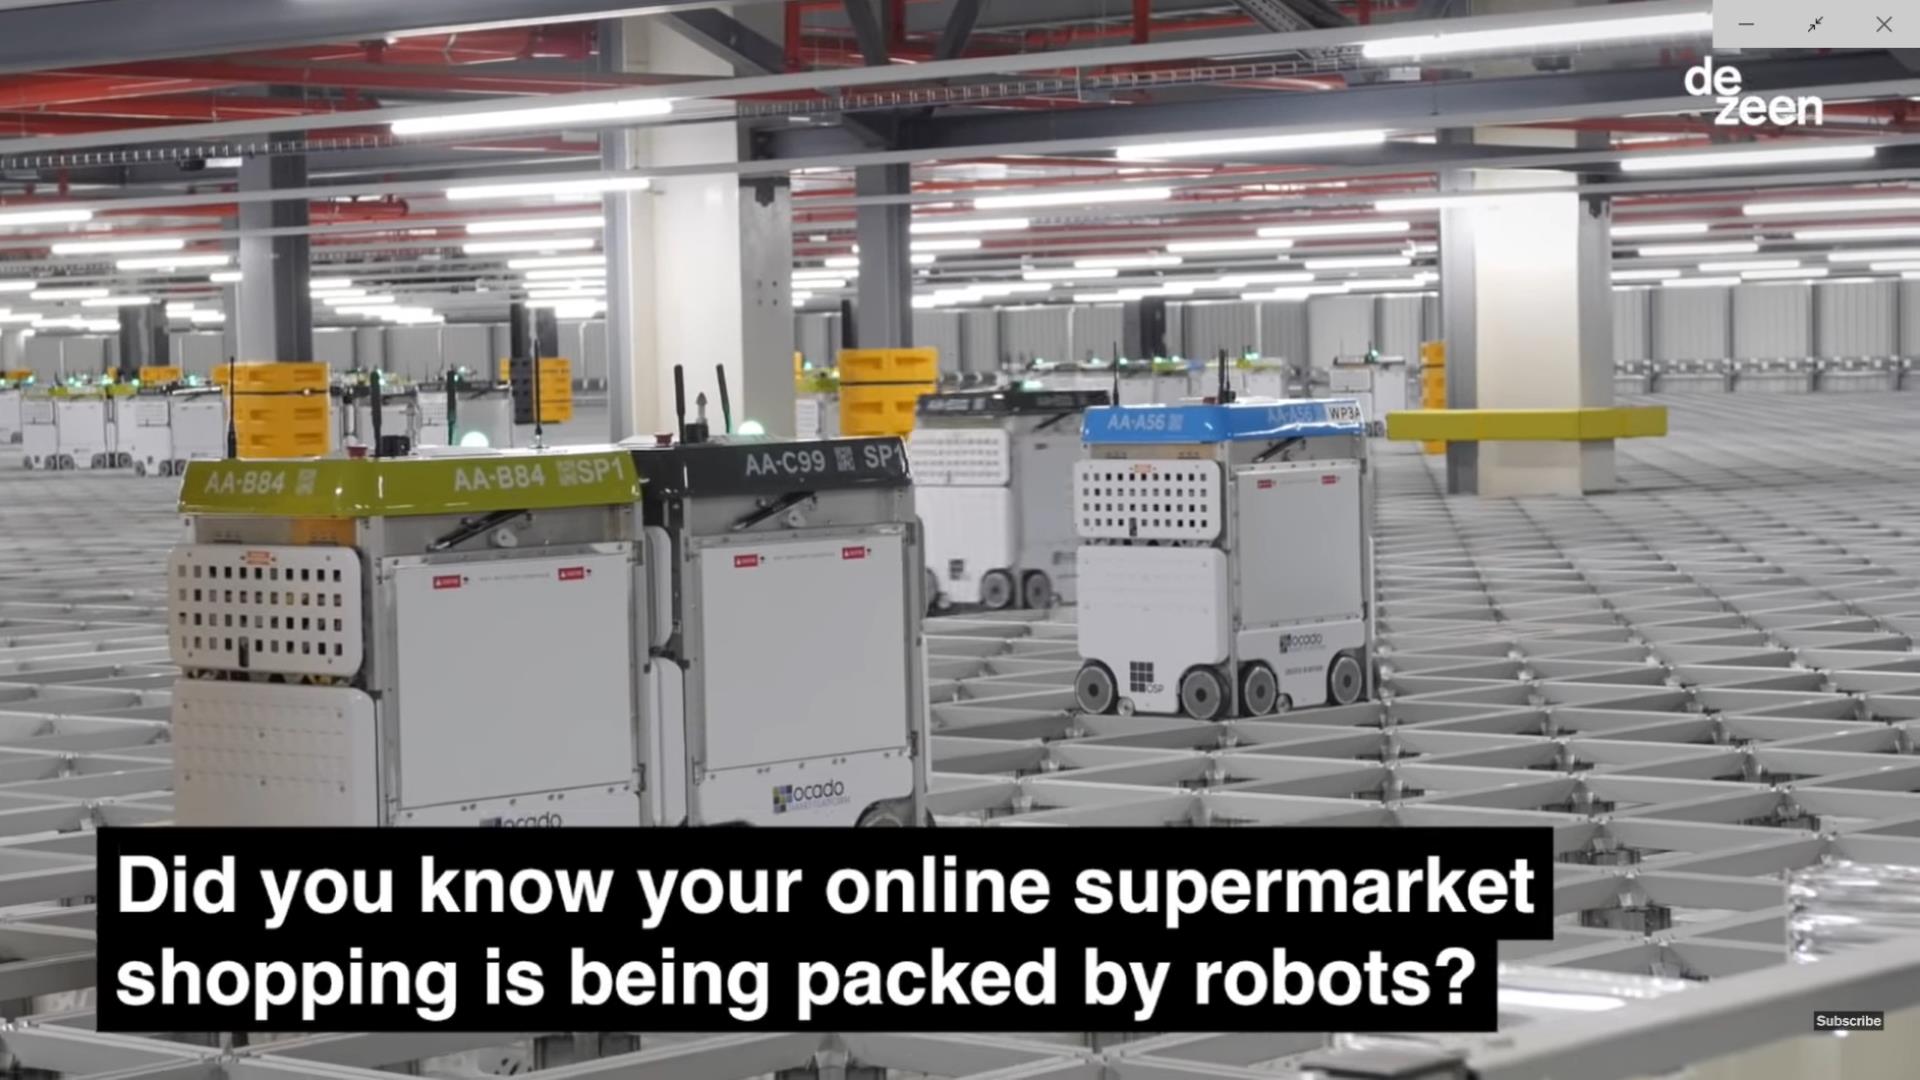 온라인쇼핑 물류센터 포장을 담당하는 로봇군단